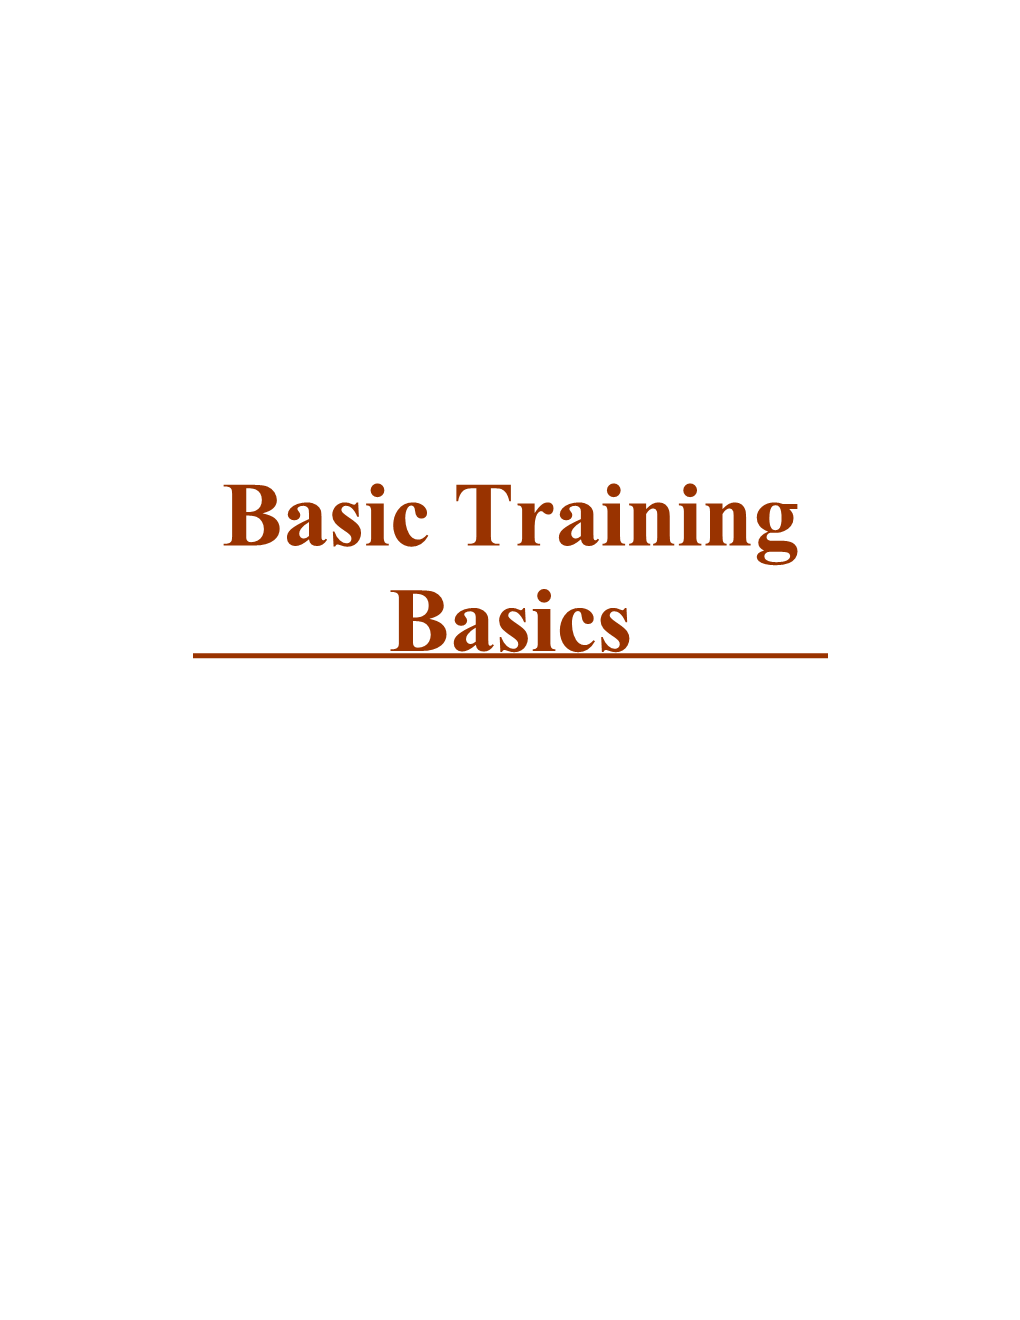 Basic Training Basics